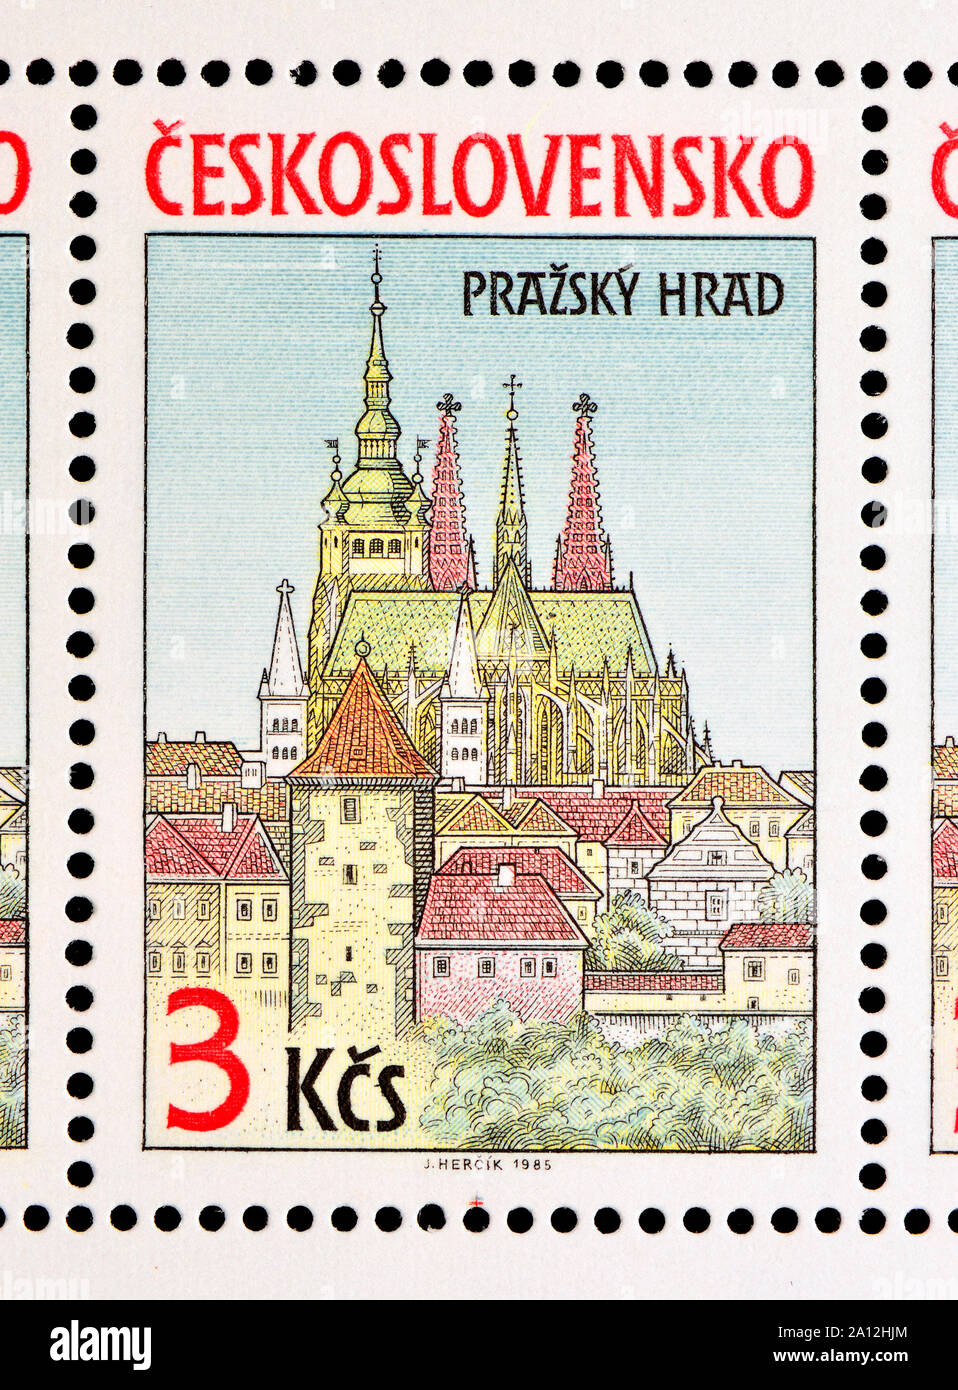 Timbre tchécoslovaque (1985) : Vue sur le château de Prague / Prazsky Hrad. Habour vu de l'autre côté de la rivière. Banque D'Images